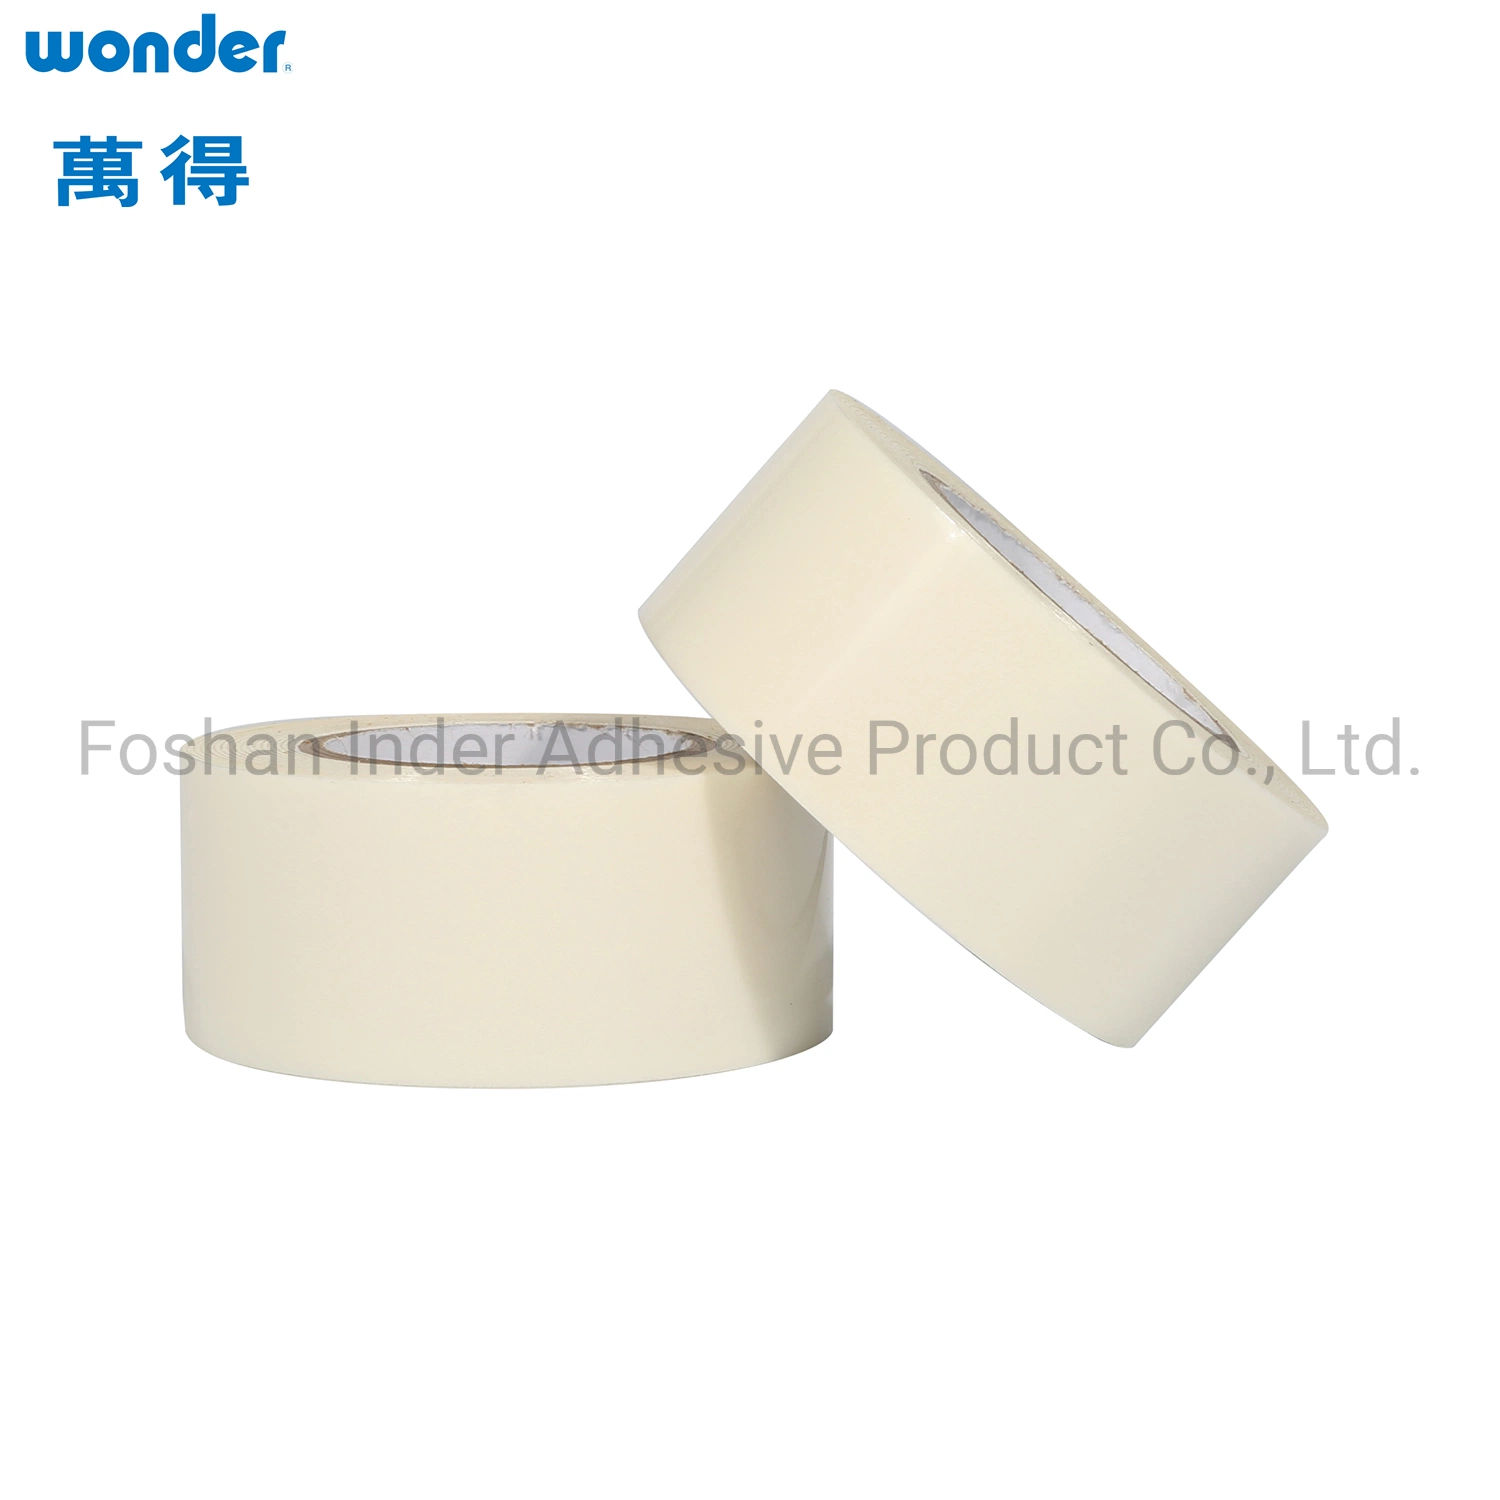 Wonder 63532 Solvent basado de buena calidad autoadhesivo doble cara Cinta de tejido